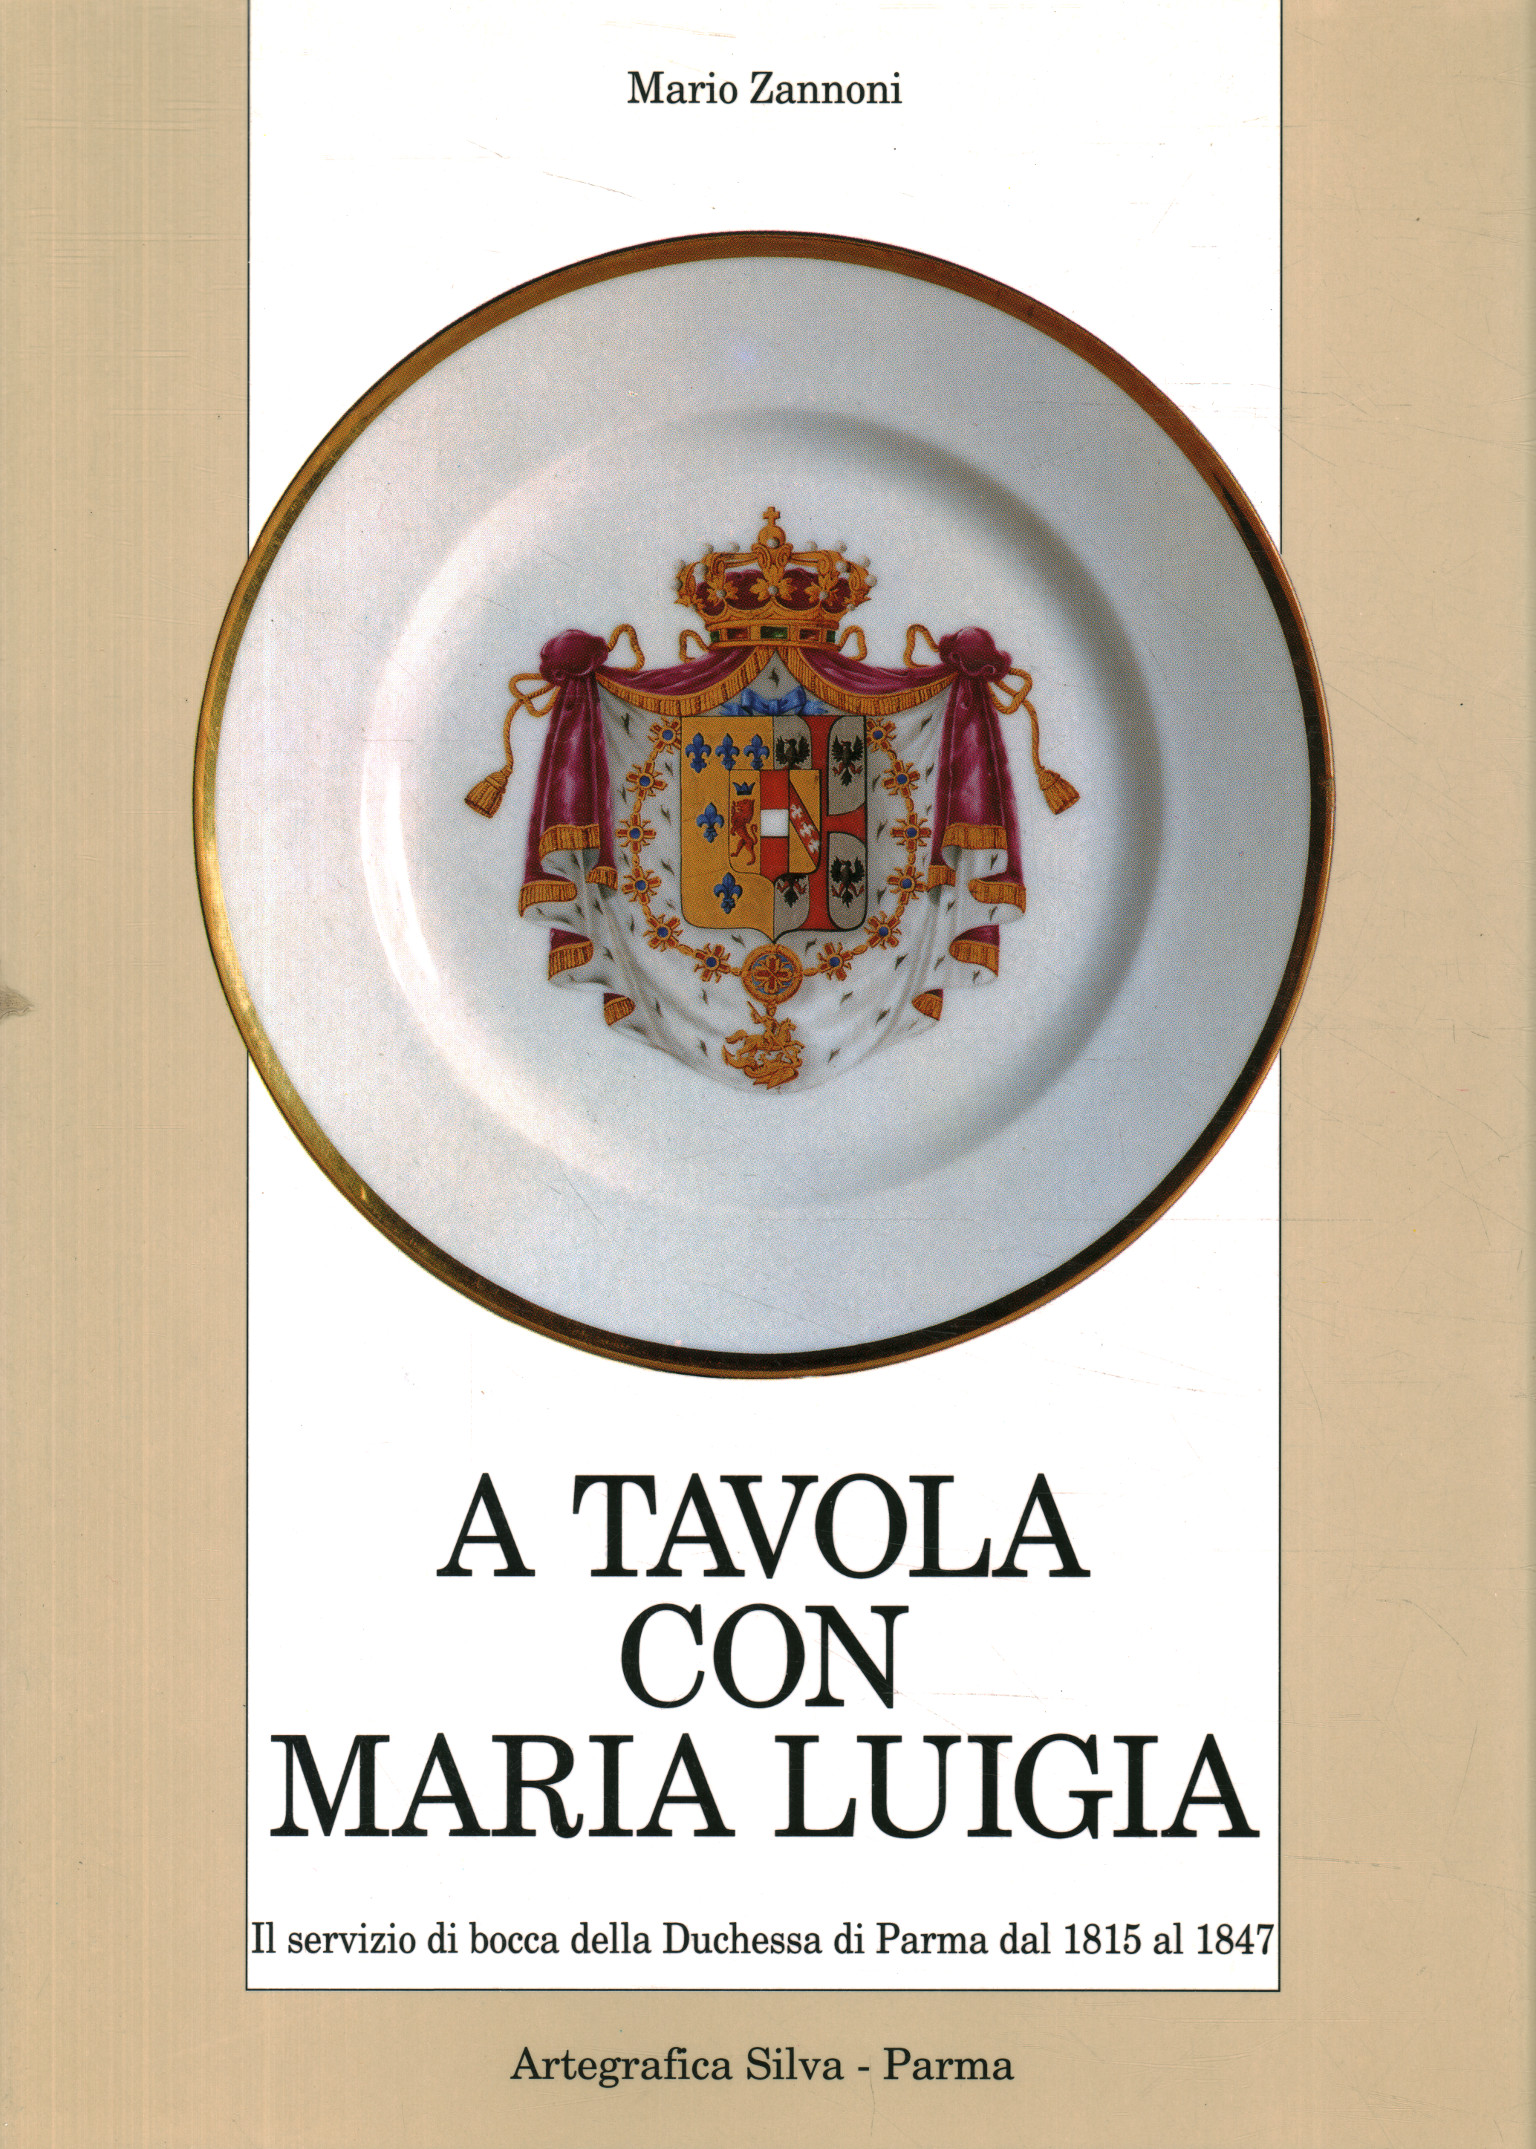 A table avec Maria Luigia